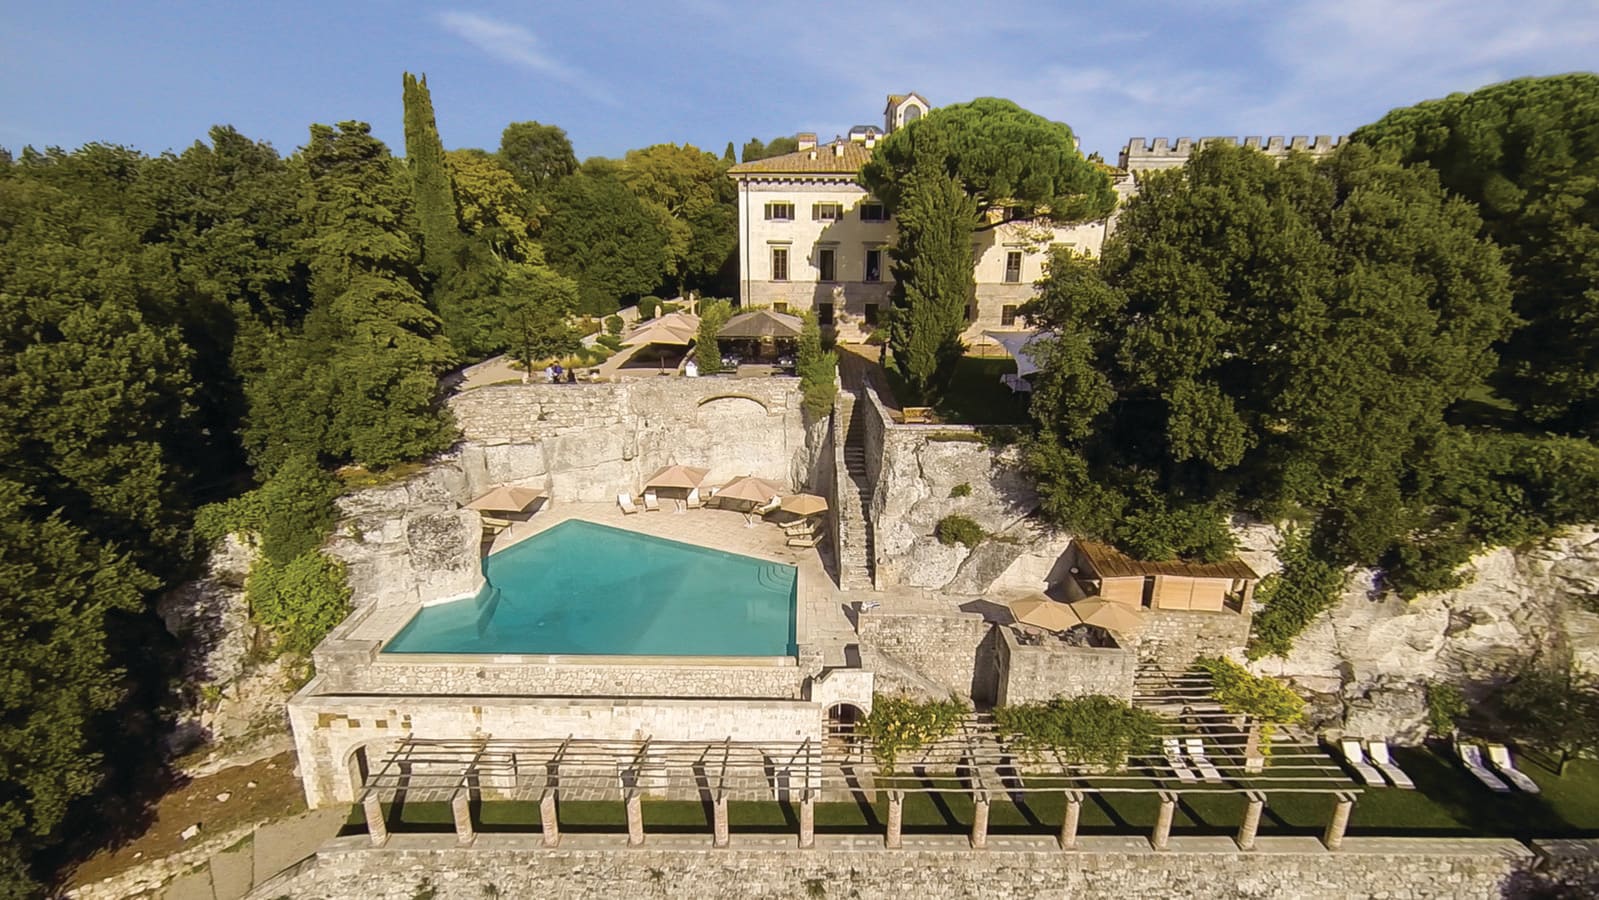 Mejor hotel sostenible. En el Hotel Borgo Pignano tampoco falta la piscina y el restaurante a la carta que utiliza los ingredientes más frescos de los huertos orgánicos de la finca. Durante el verano, las comidas se pueden tomar en un bonito jardín al aire libre. Precio: desde 220€ / la noche